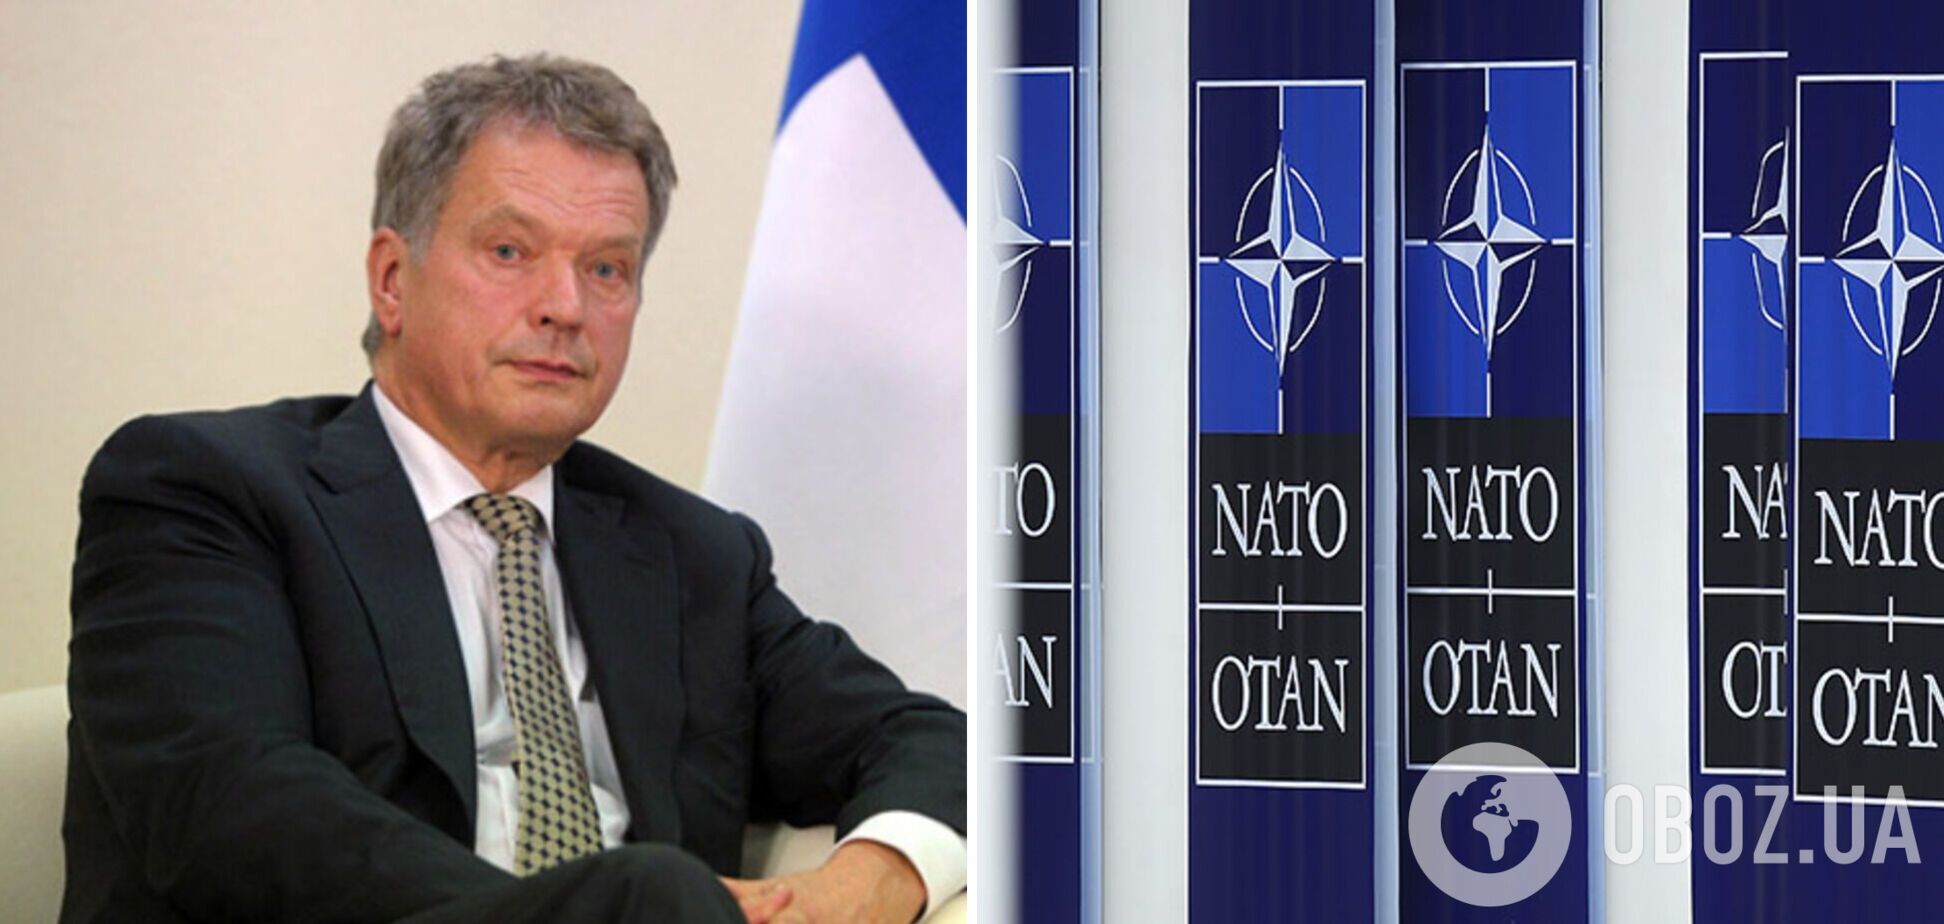 Фінляндія остаточно вирішила приєднатися до НАТО: офіційна заява